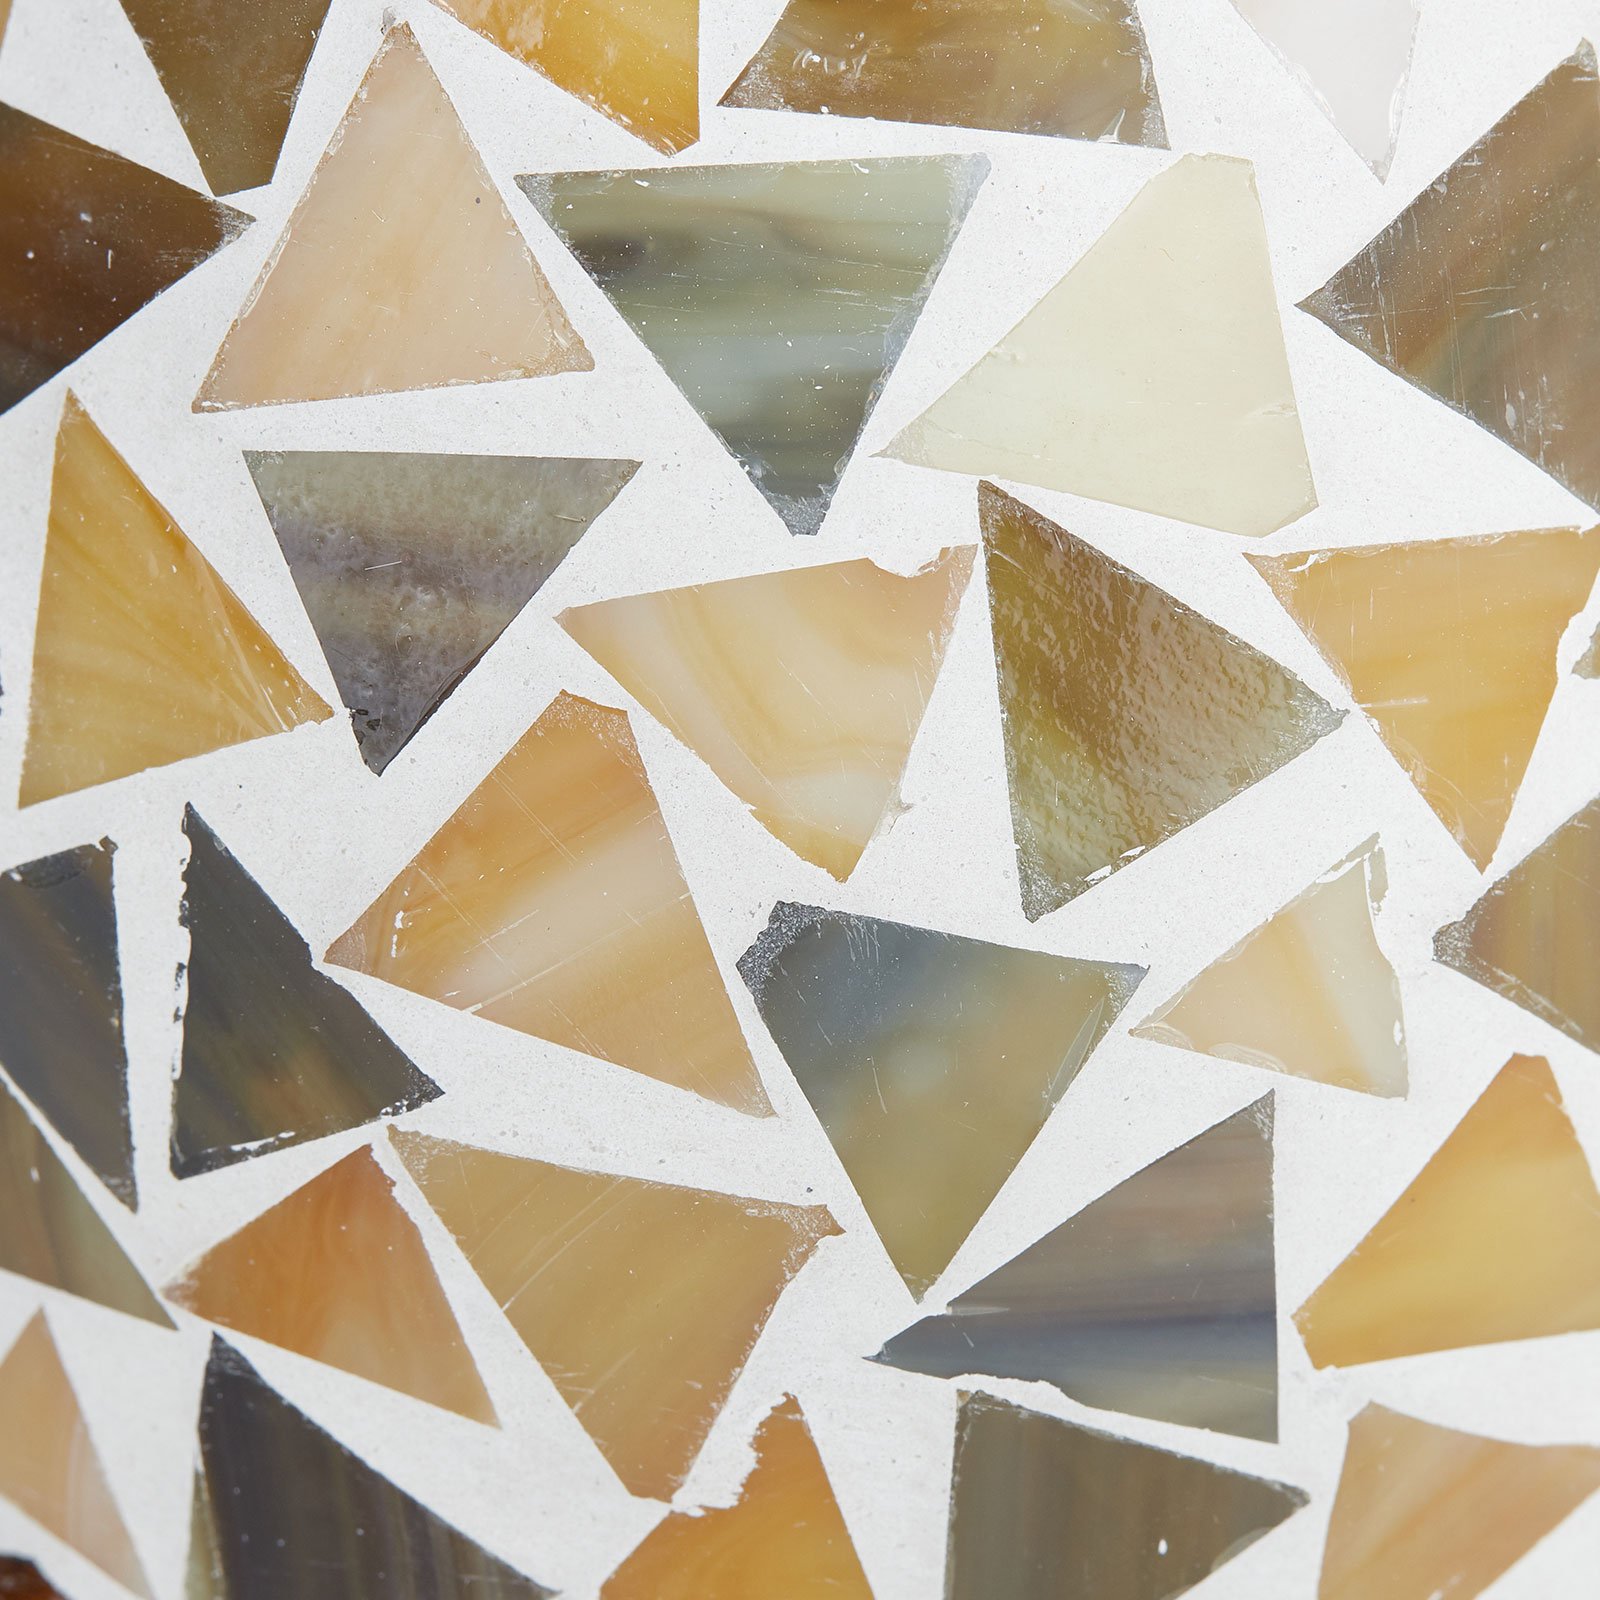 Stolná lampa Enya sklenená mozaika krémovo-hnedá